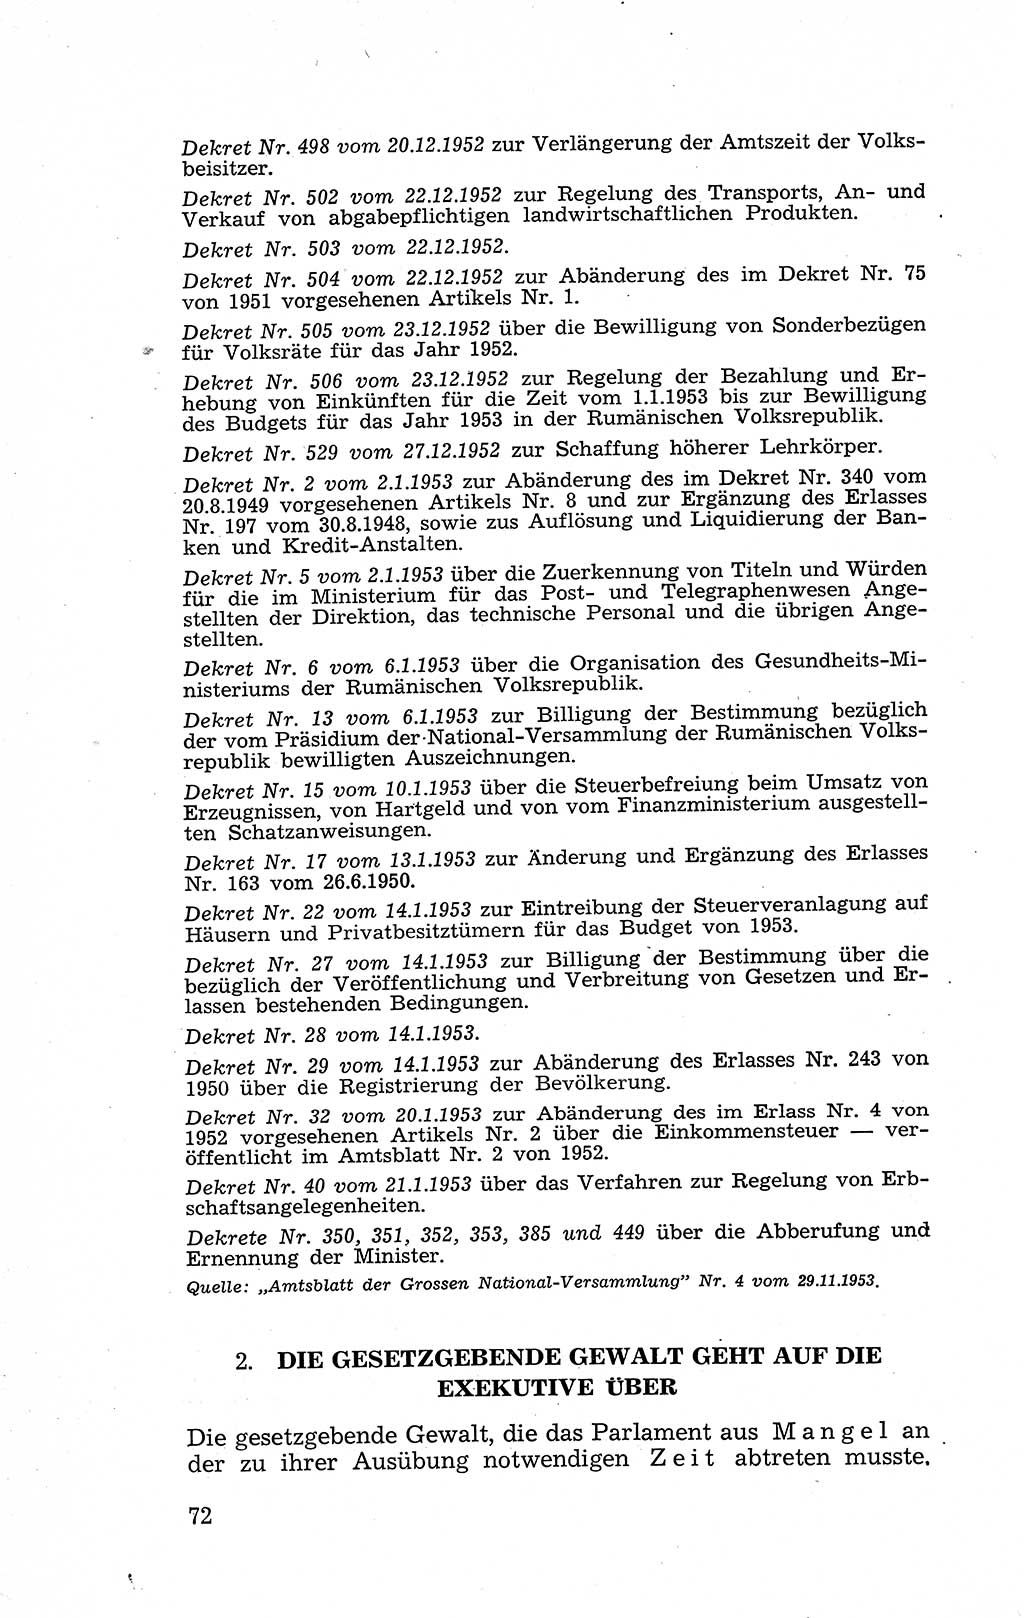 Recht in Fesseln, Dokumente, Internationale Juristen-Kommission [Bundesrepublik Deutschland (BRD)] 1955, Seite 72 (R. Dok. IJK BRD 1955, S. 72)